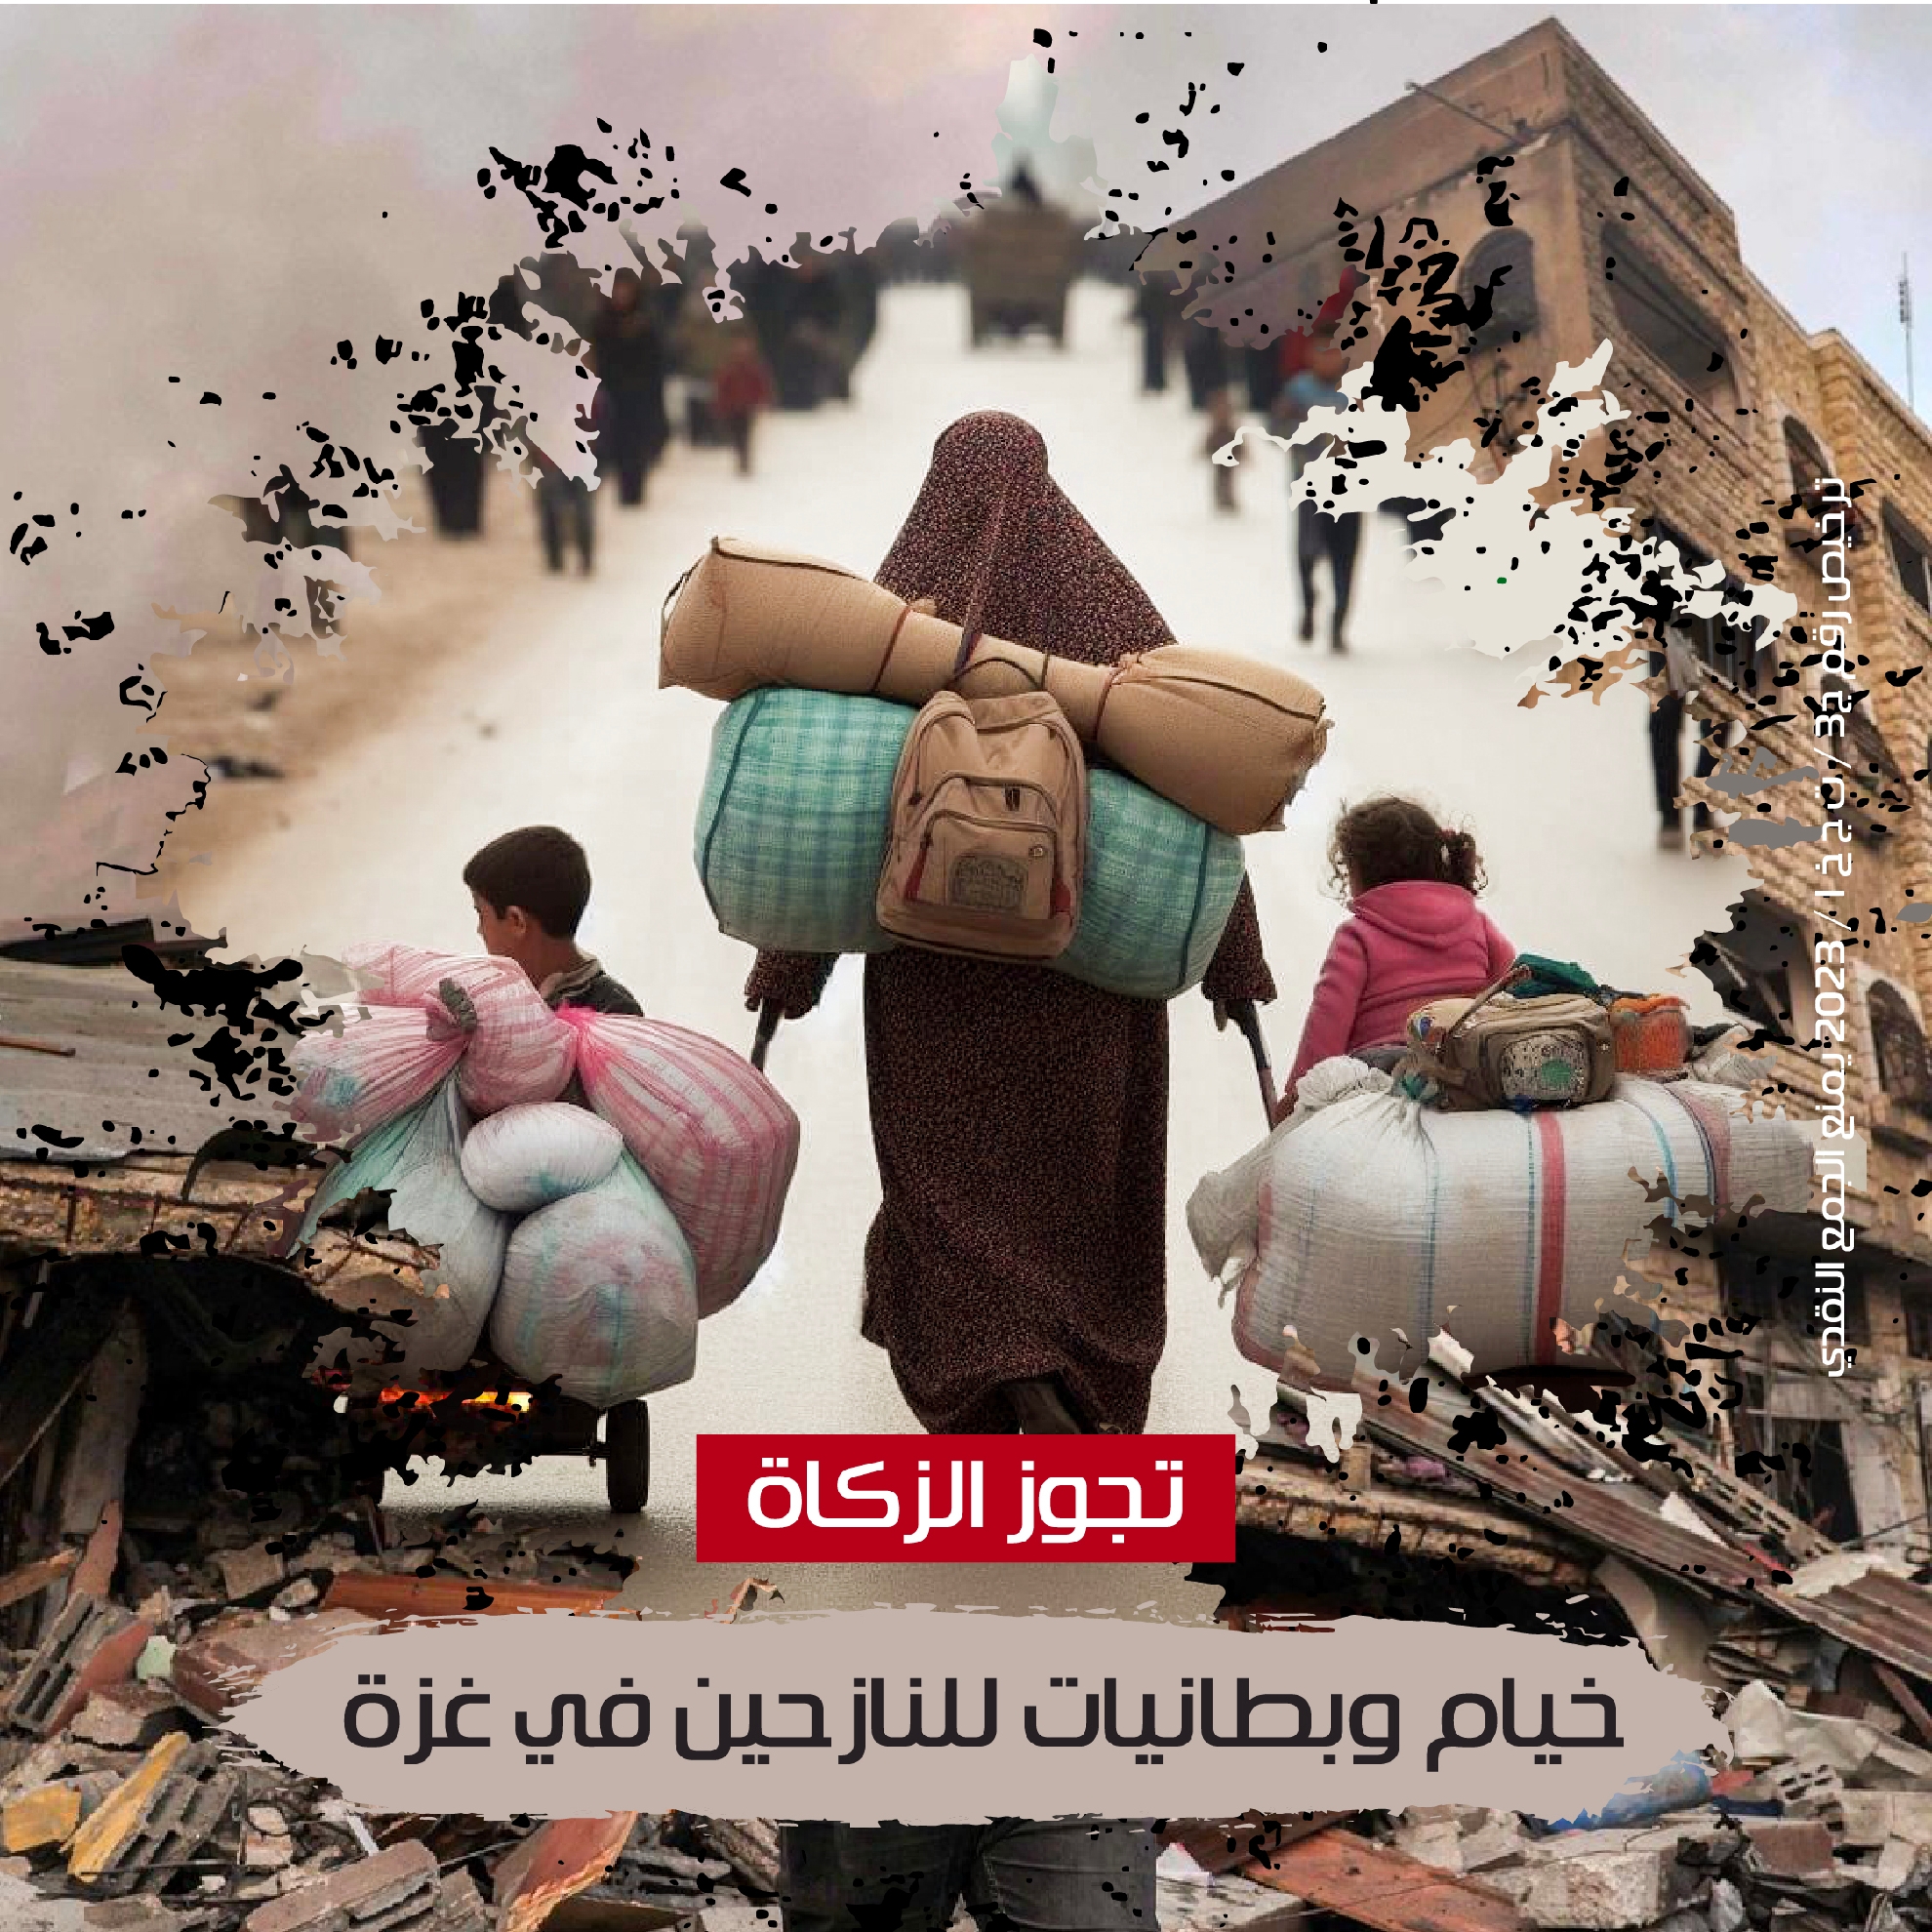 صورة خيام وبطانيات للنازحين في غزة